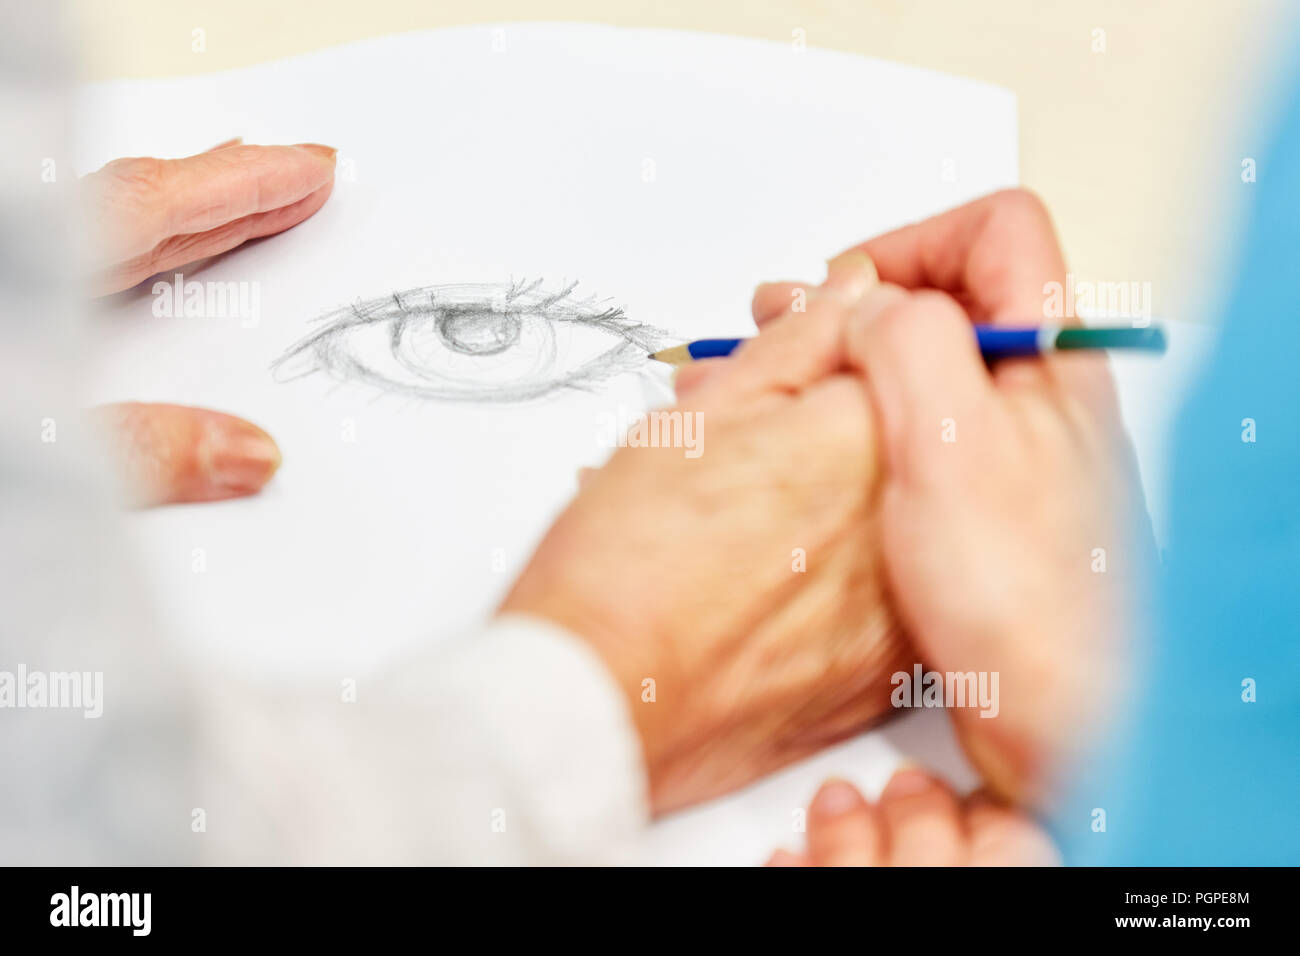 Senior Dementian dessine avec un crayon en cours de dessin créatif avec support Banque D'Images